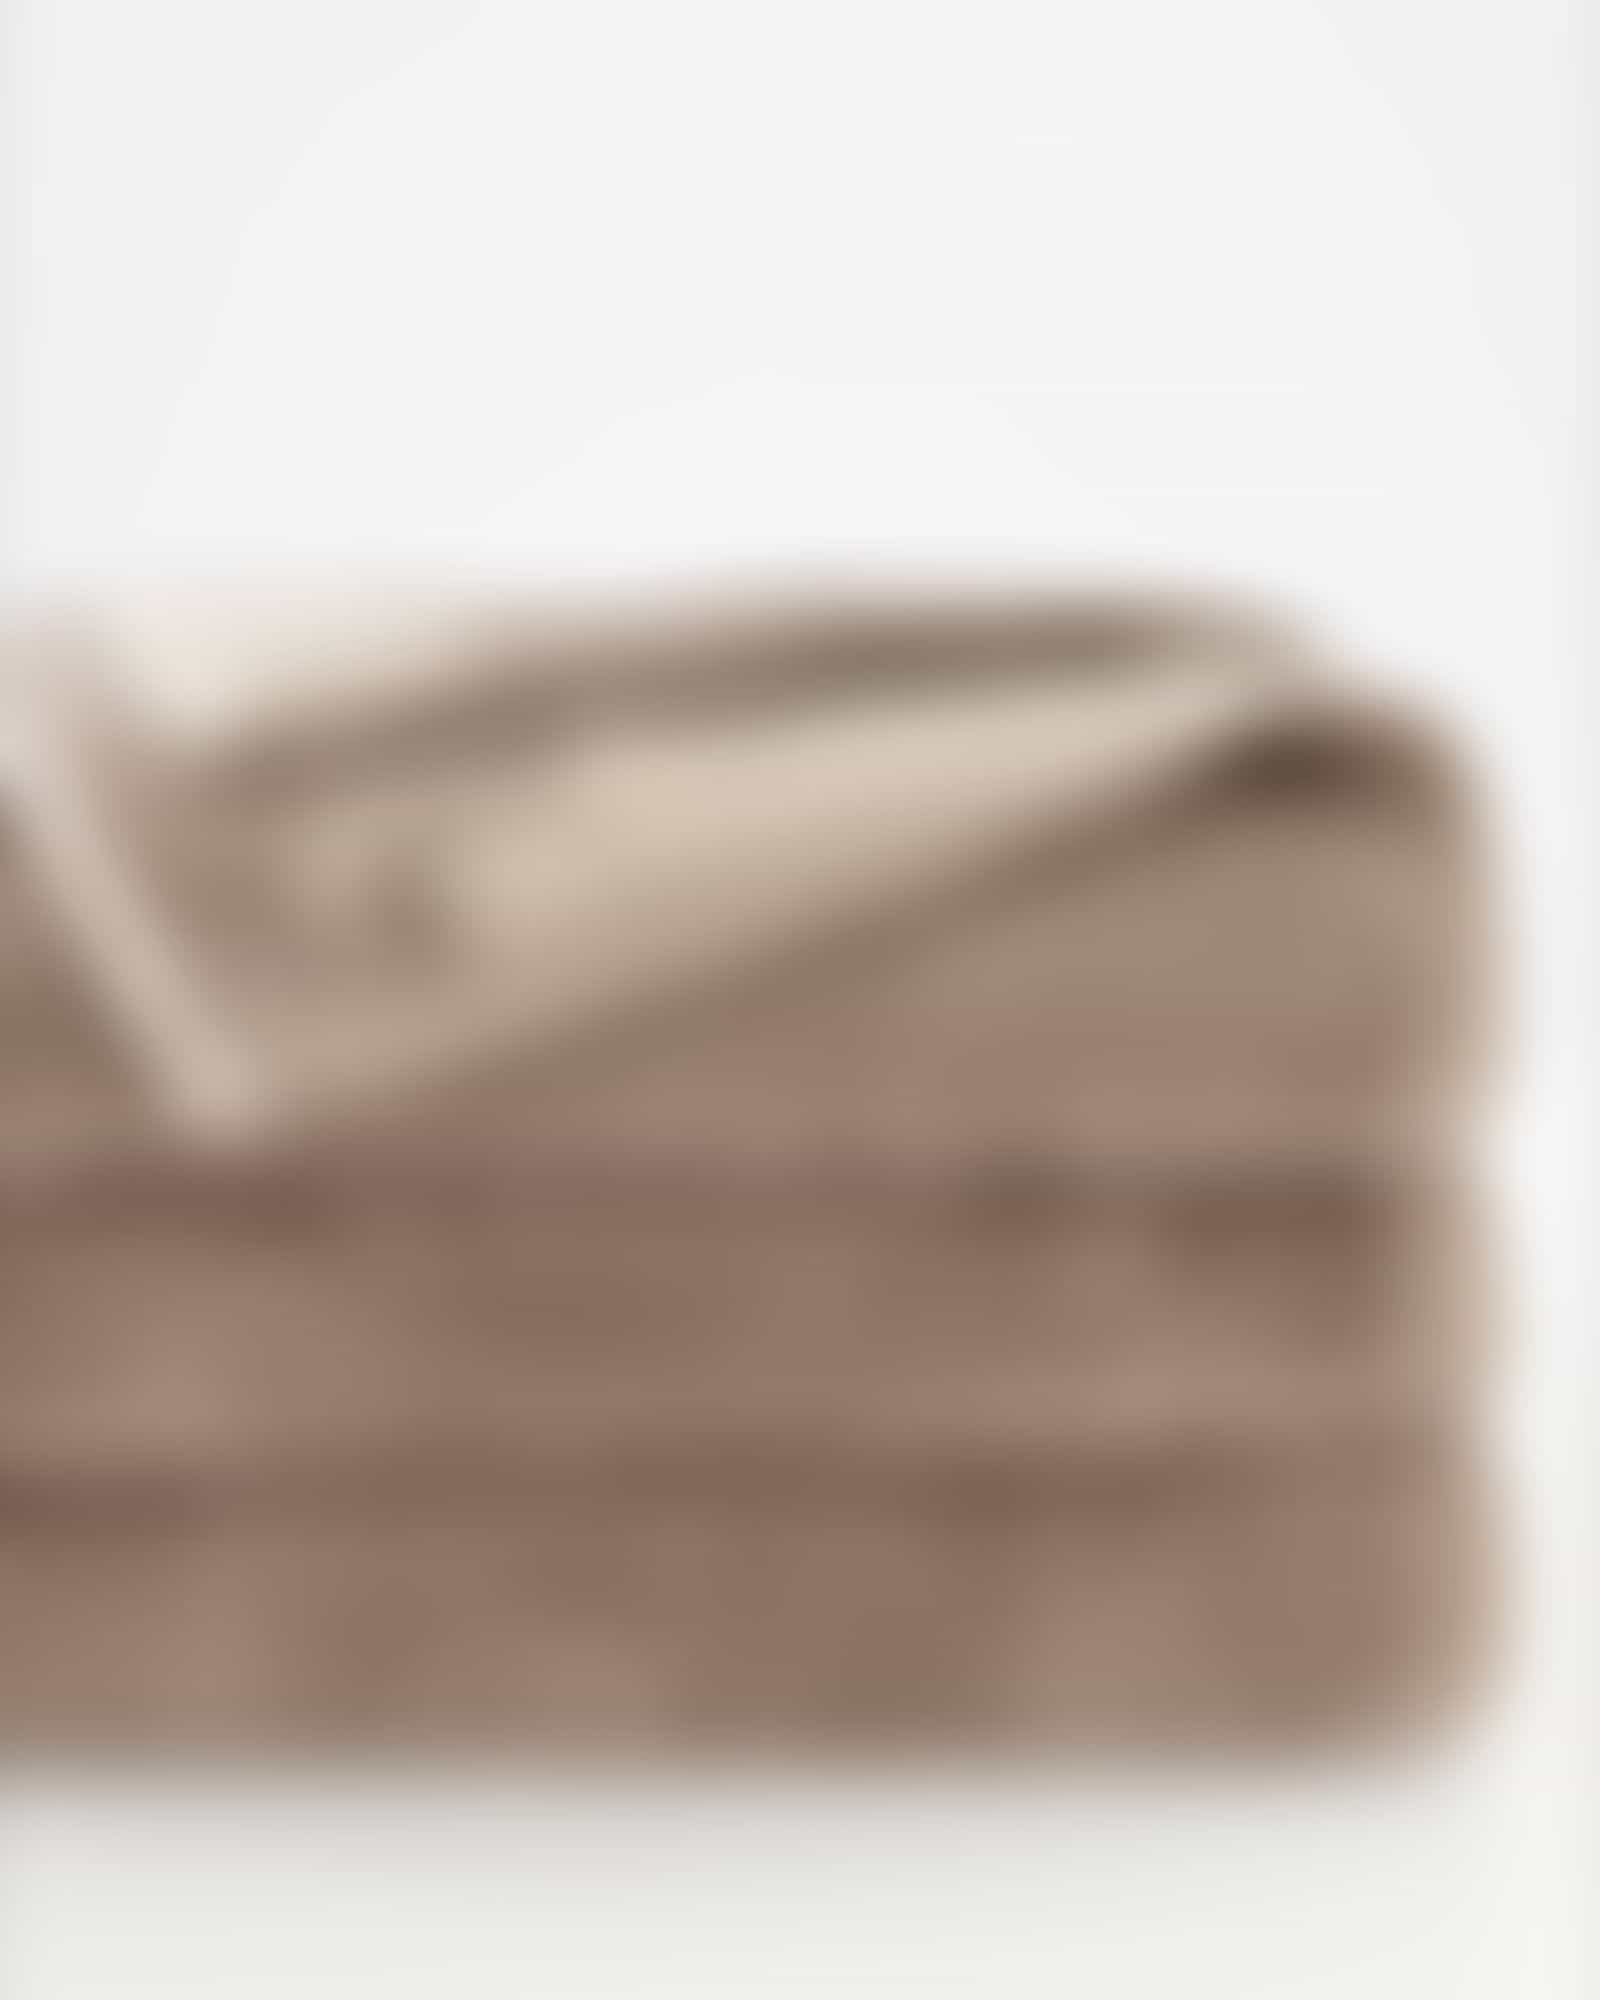 JOOP Tone Doubleface 1689 - Farbe: Sand - 37 - Seiflappen 30x30 cm Detailbild 2